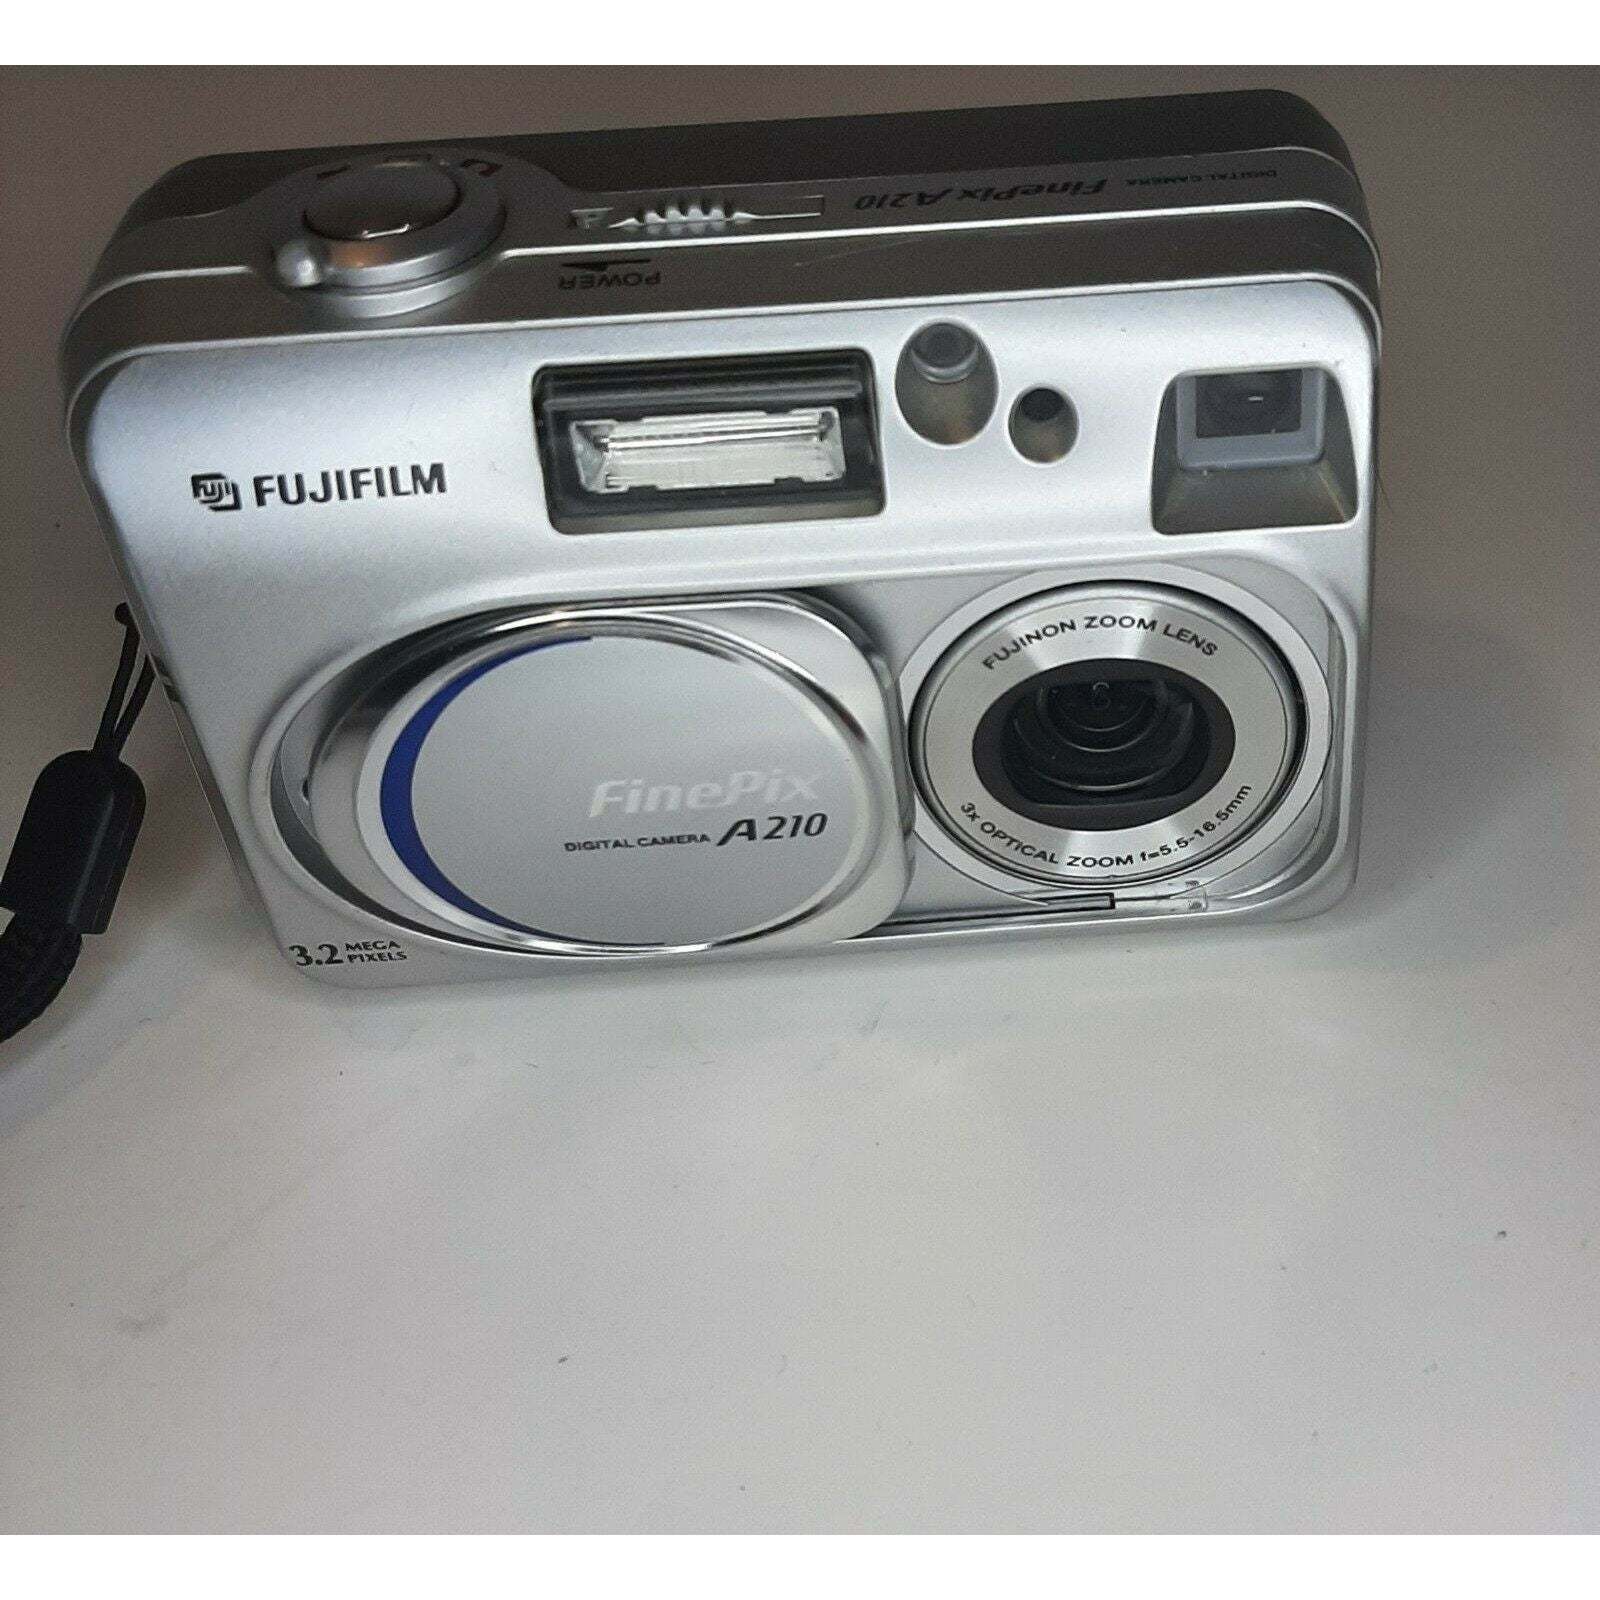 Fujifilm FinePix A210 Digital Camera - $60.00